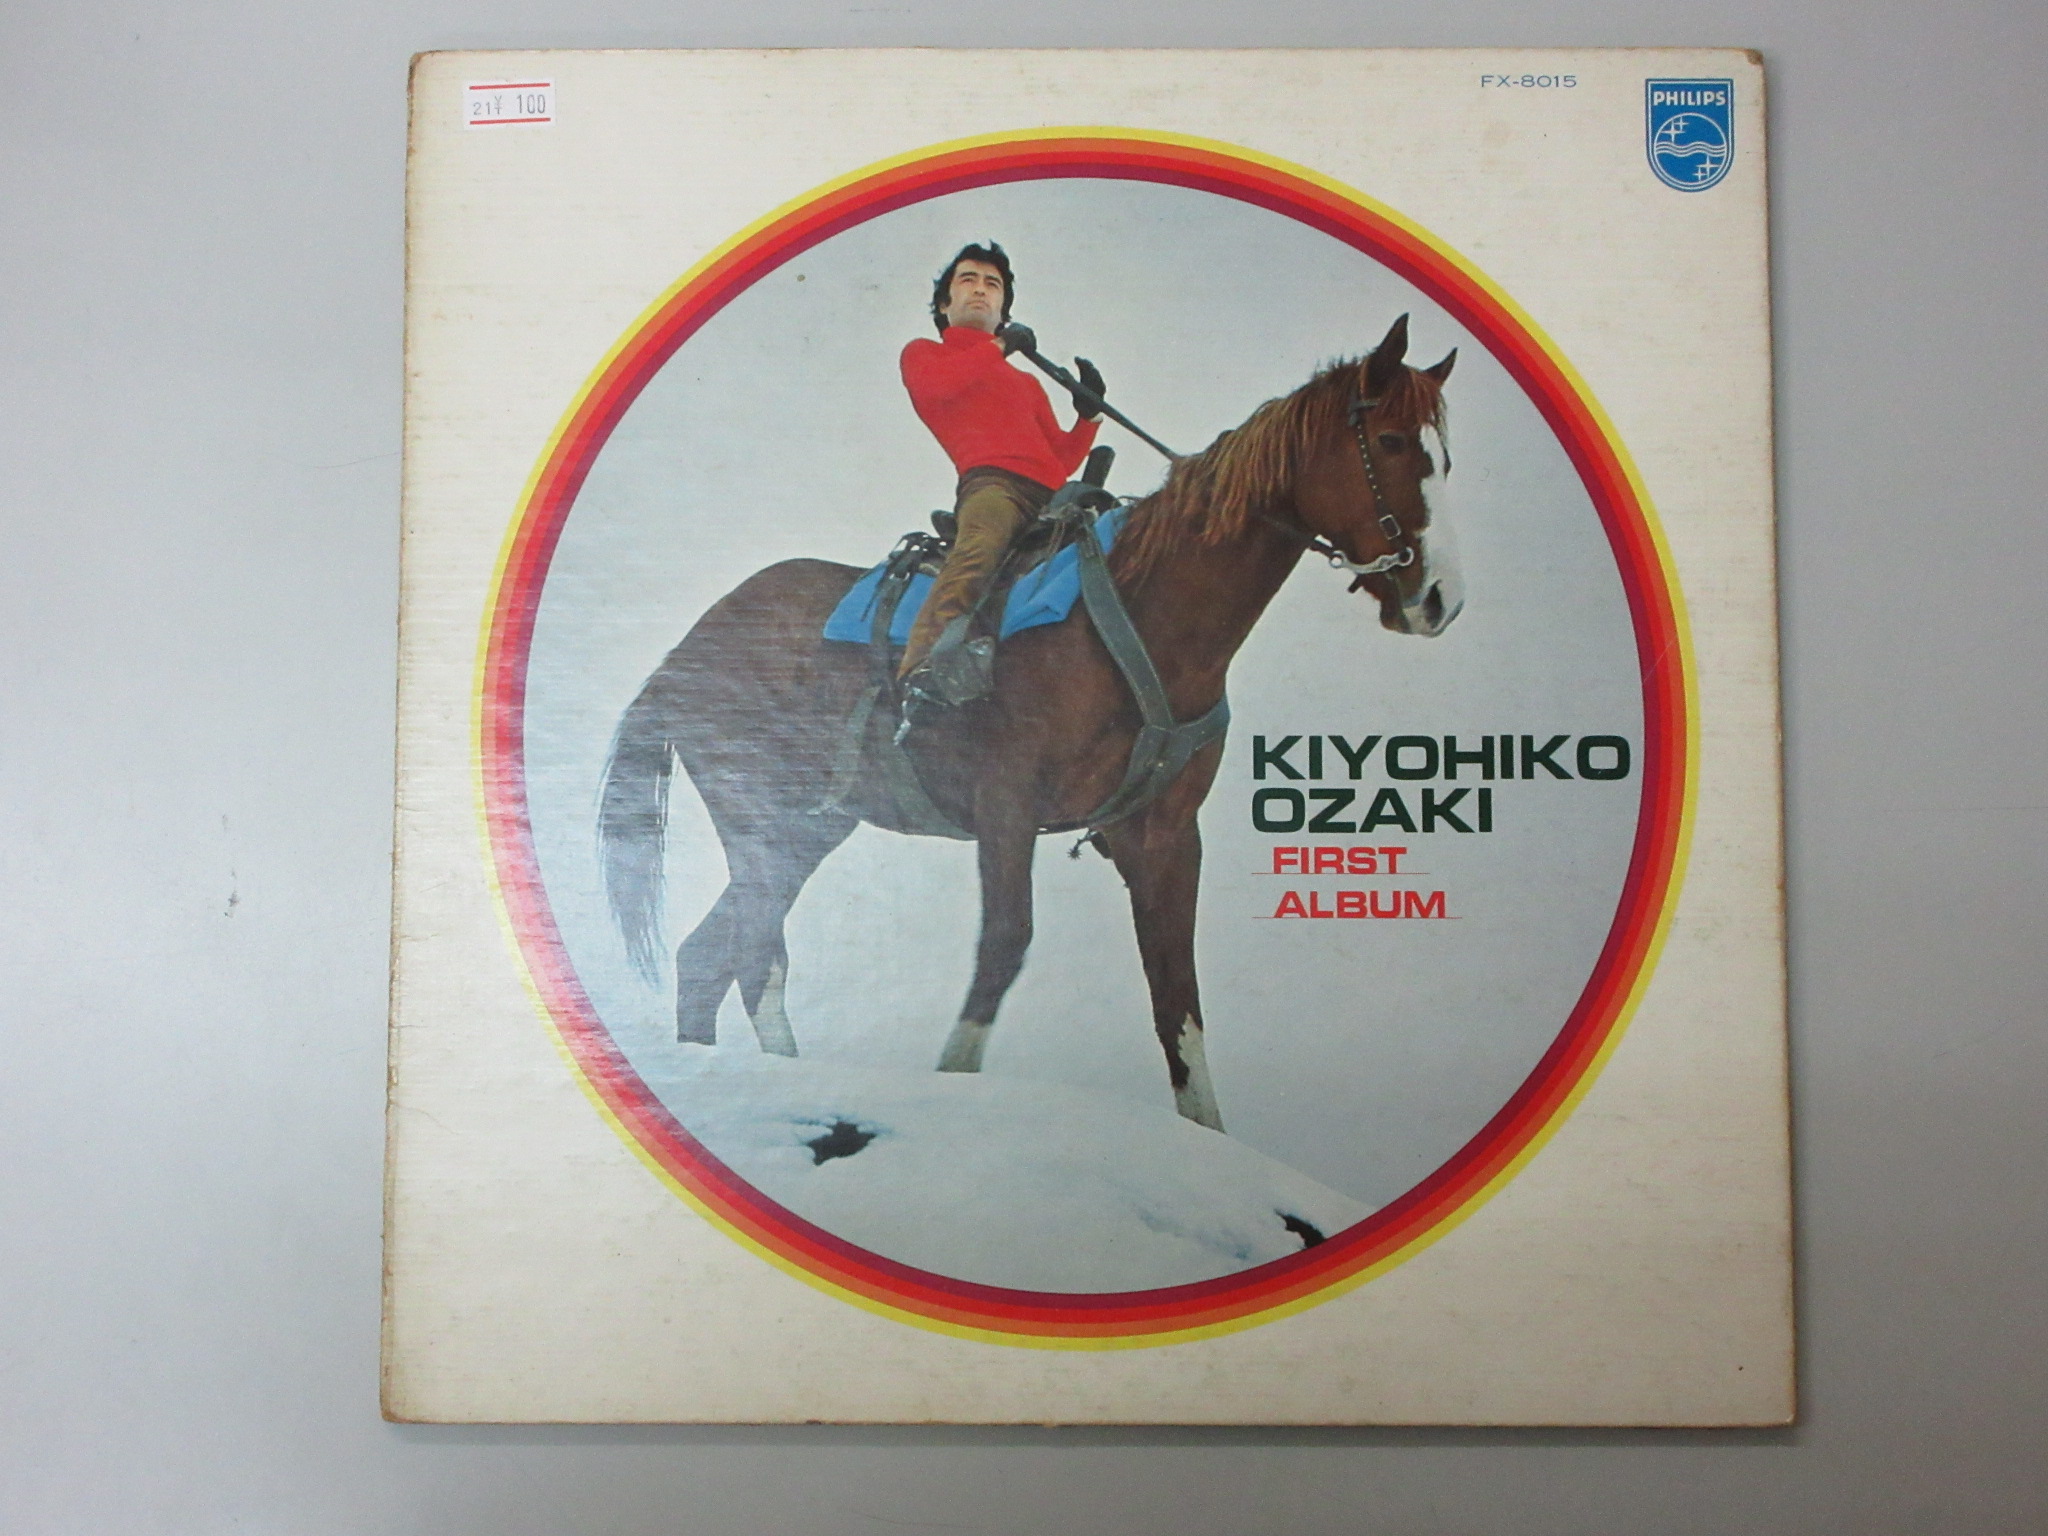 Kiyohiko Ozaki - First Album 尾崎紀世彦 [FX-8015]